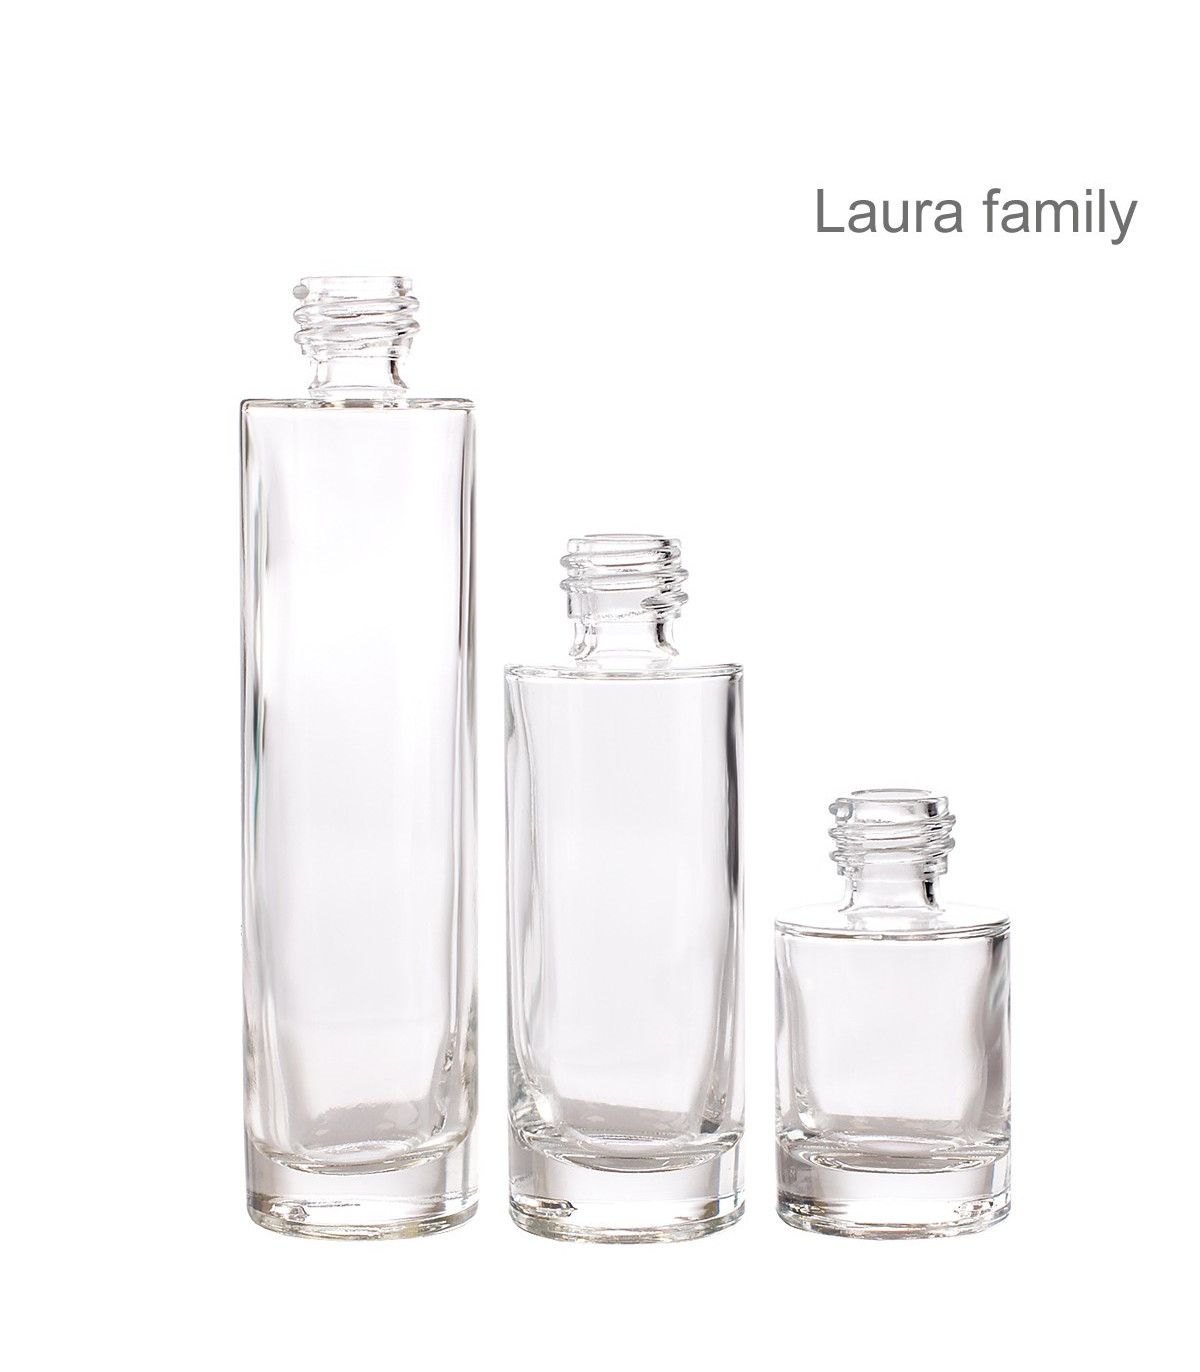 Flacon sticlă Laura, 30 ml